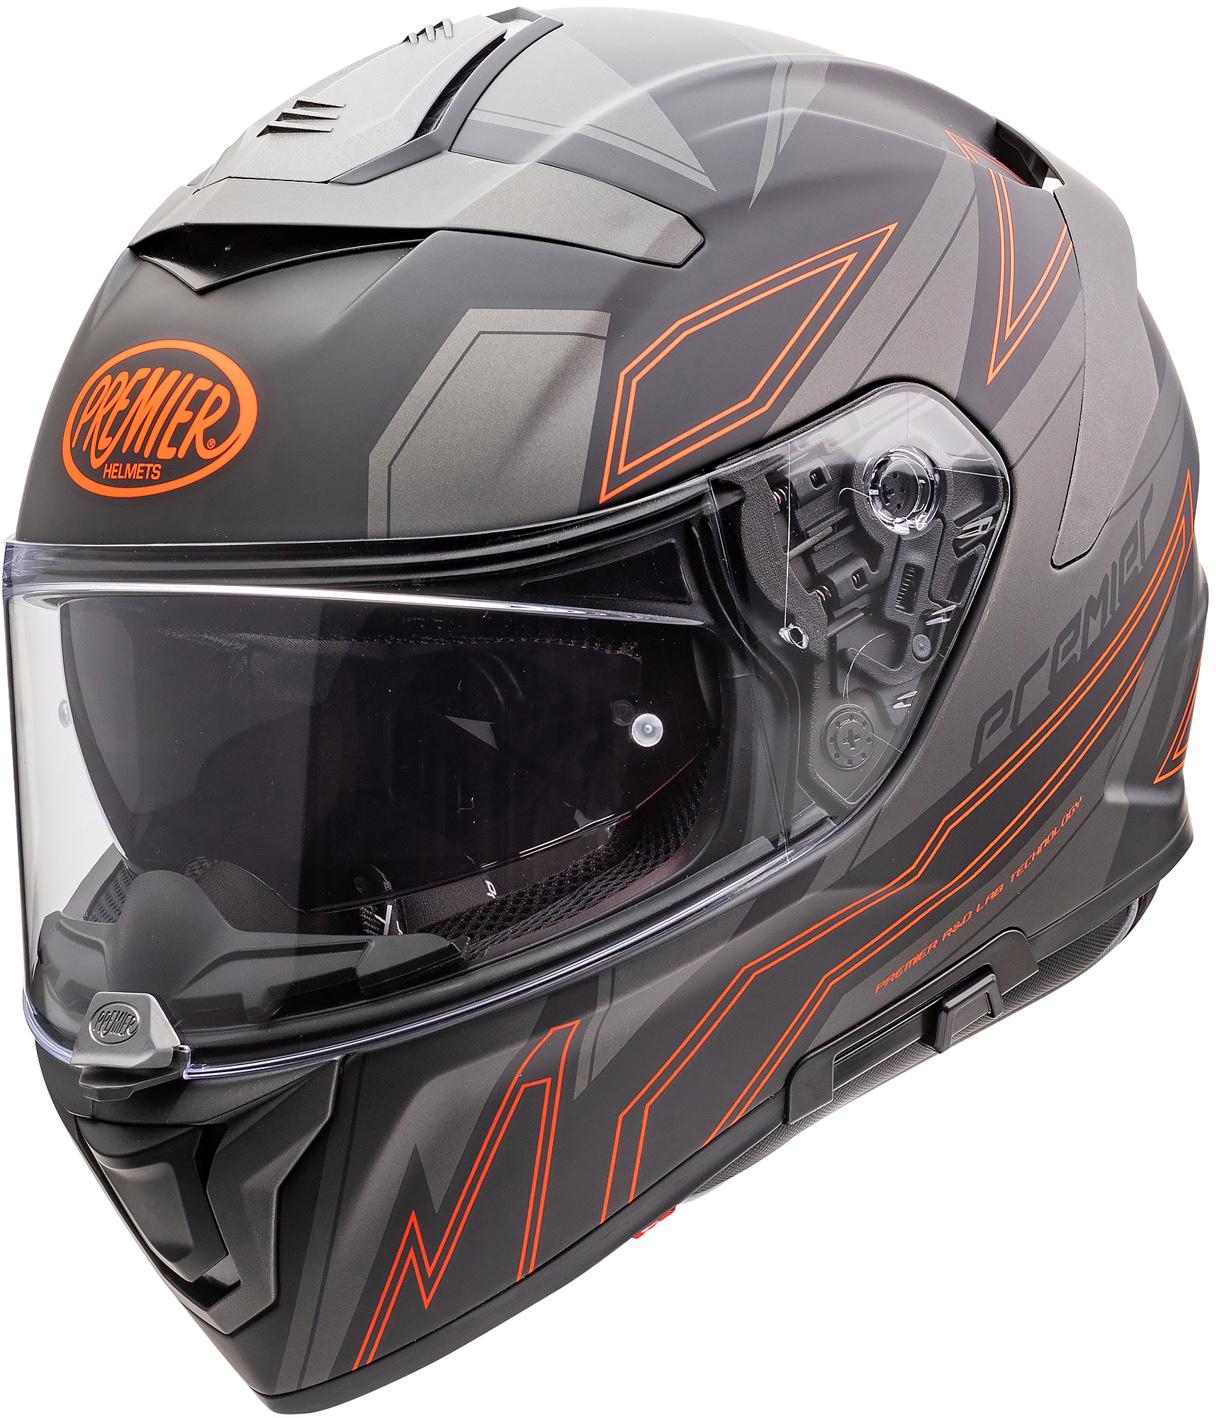 Premier Devil El Full Face Motorcycle Helmet - Black/Orange, S